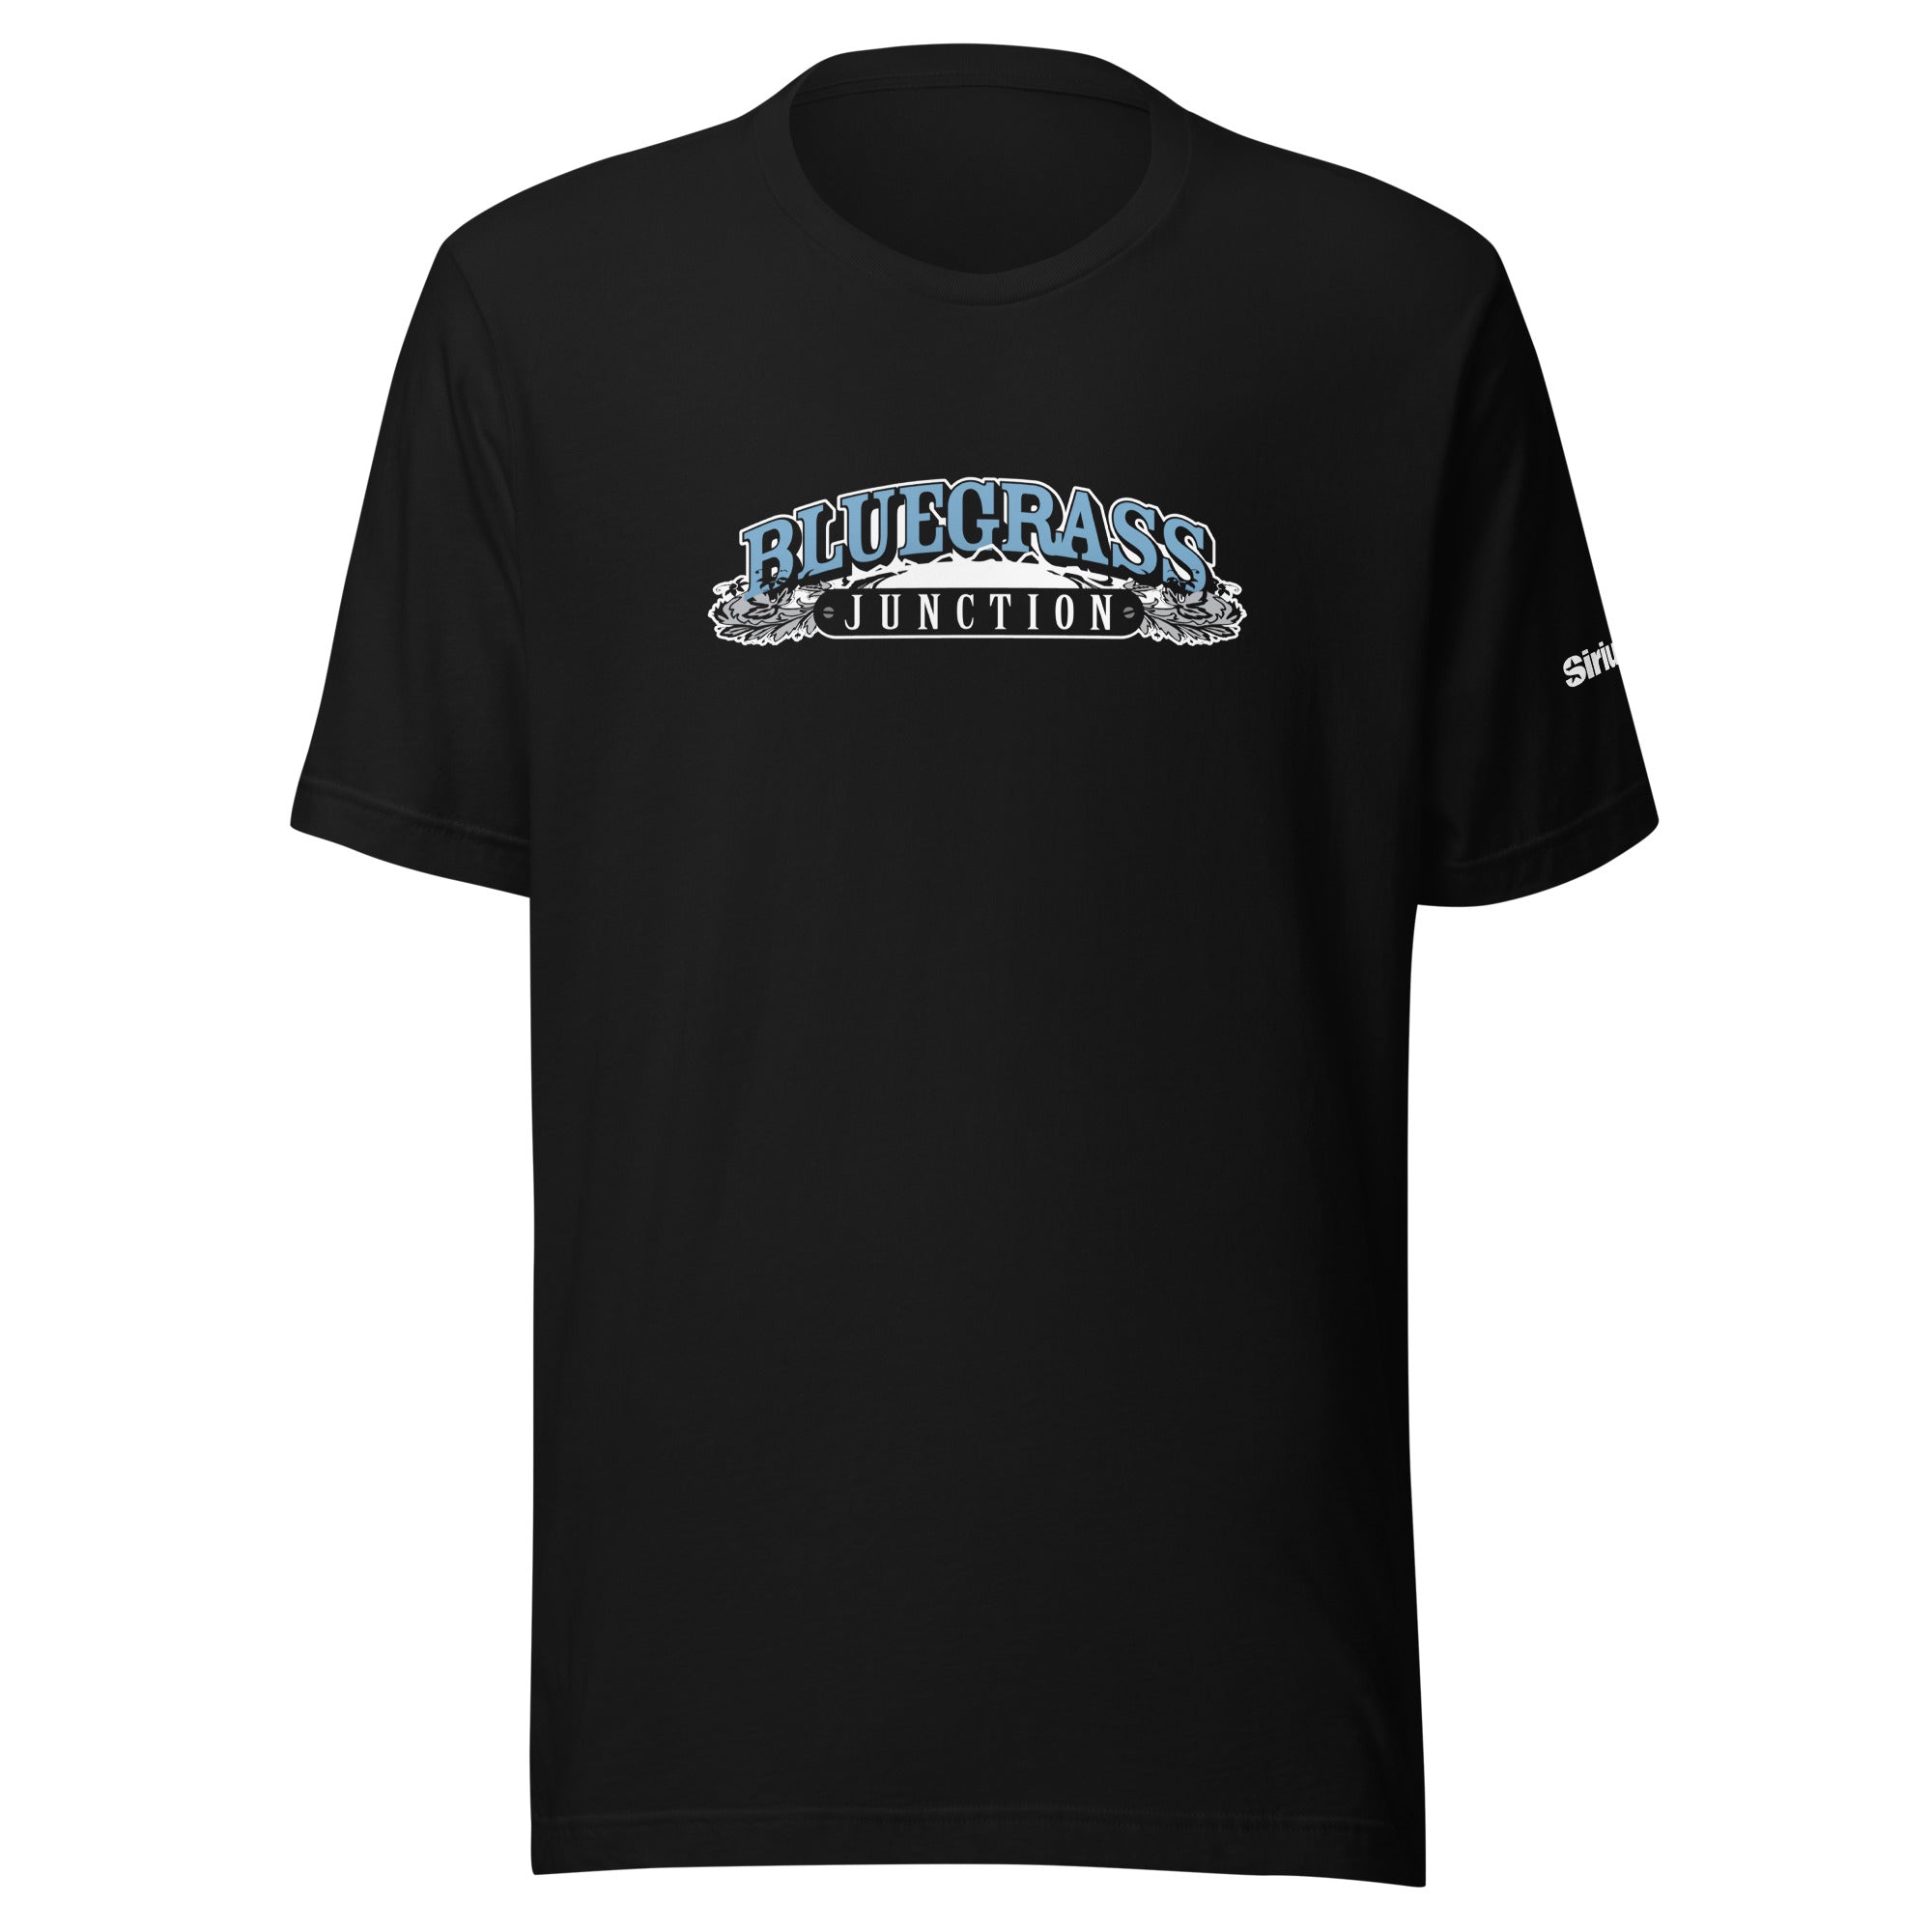 Bluegrass Junction: T-shirt (Black)